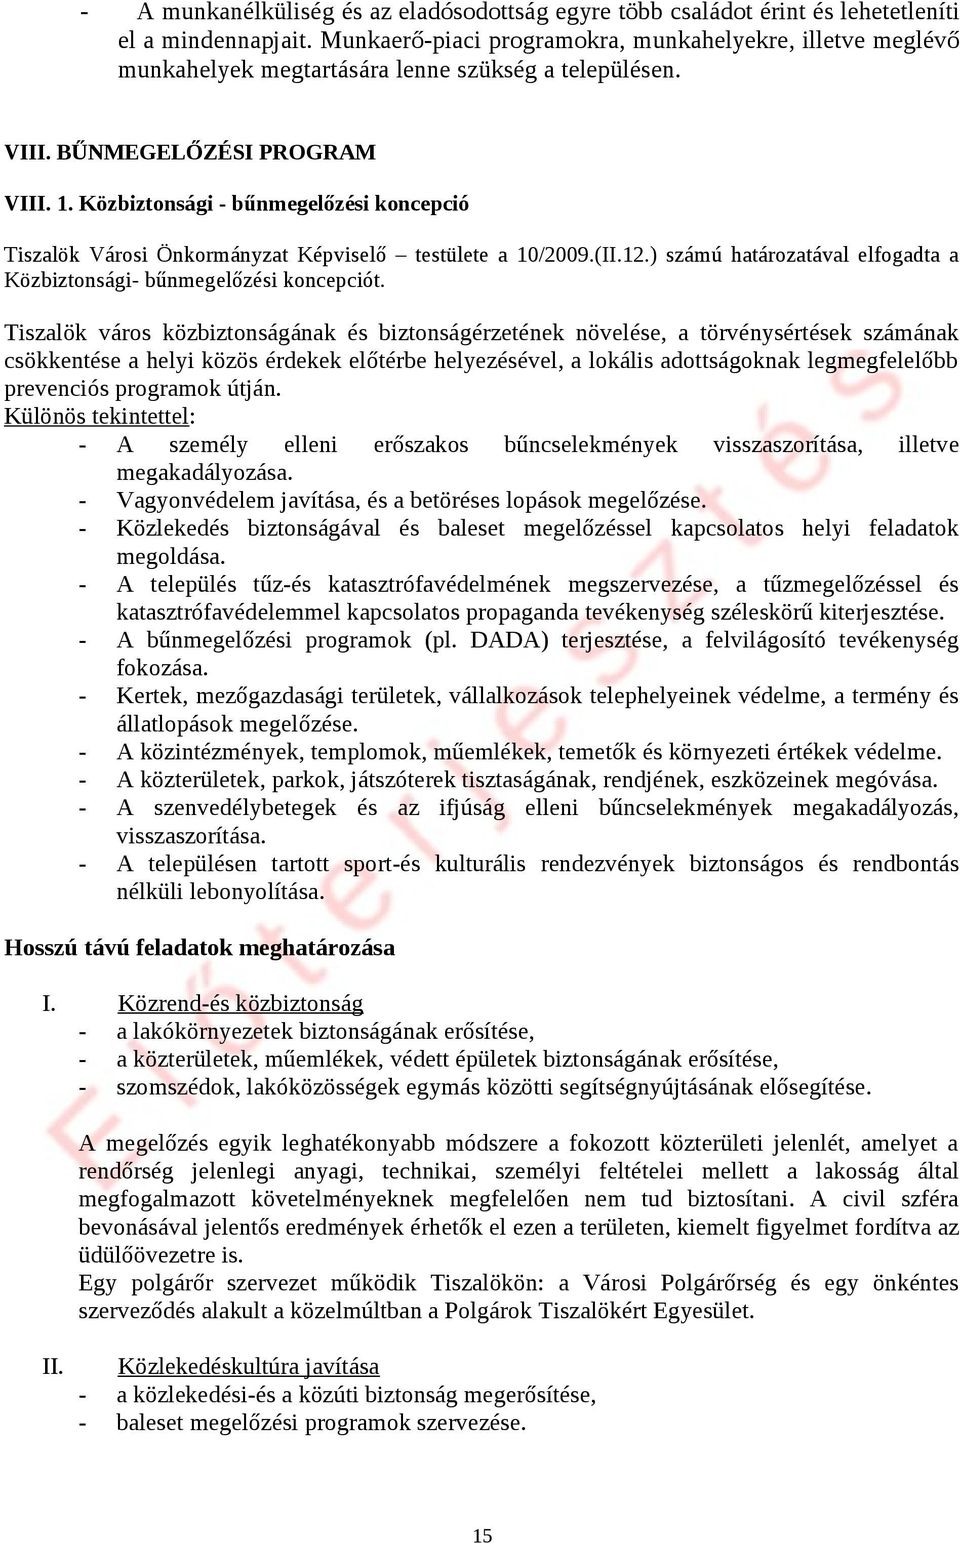 Közbiztonsági - bűnmegelőzési koncepció Tiszalök Városi Önkormányzat Képviselő testülete a 10/2009.(II.12.) számú határozatával elfogadta a Közbiztonsági- bűnmegelőzési koncepciót.